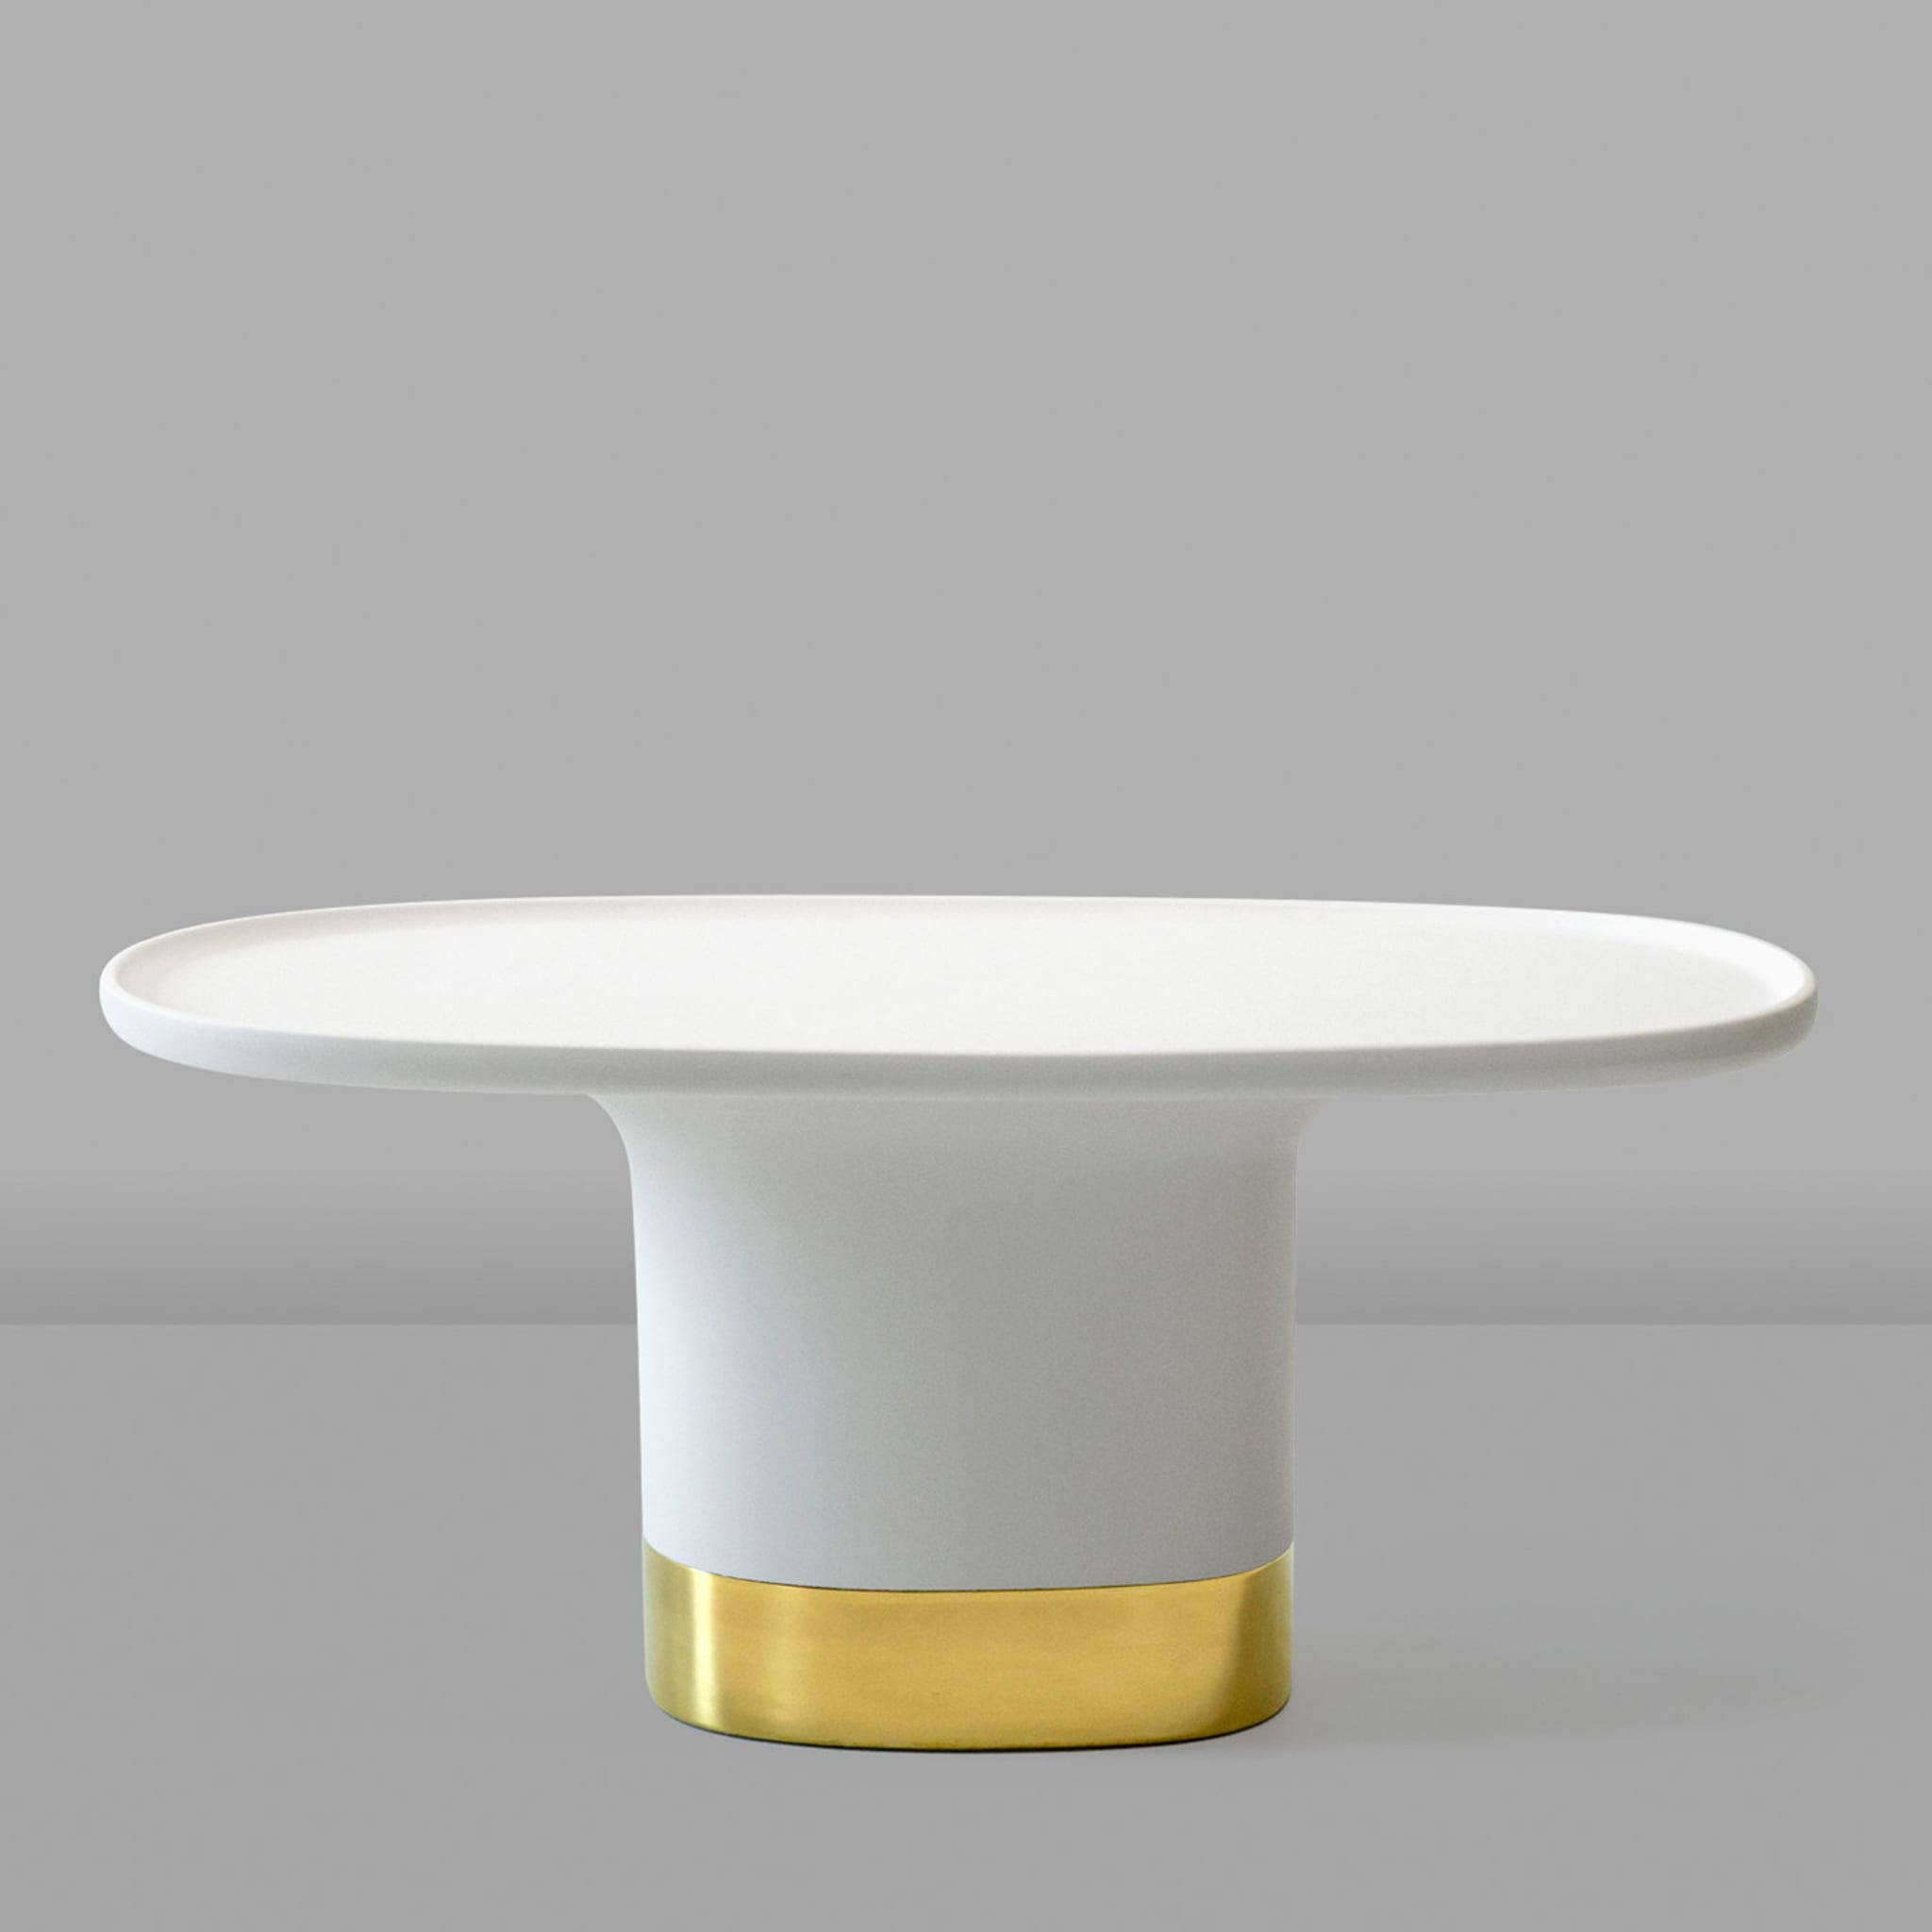 Sune S White Coffee Table by Matteo Zorzenoni - Alternative view 1